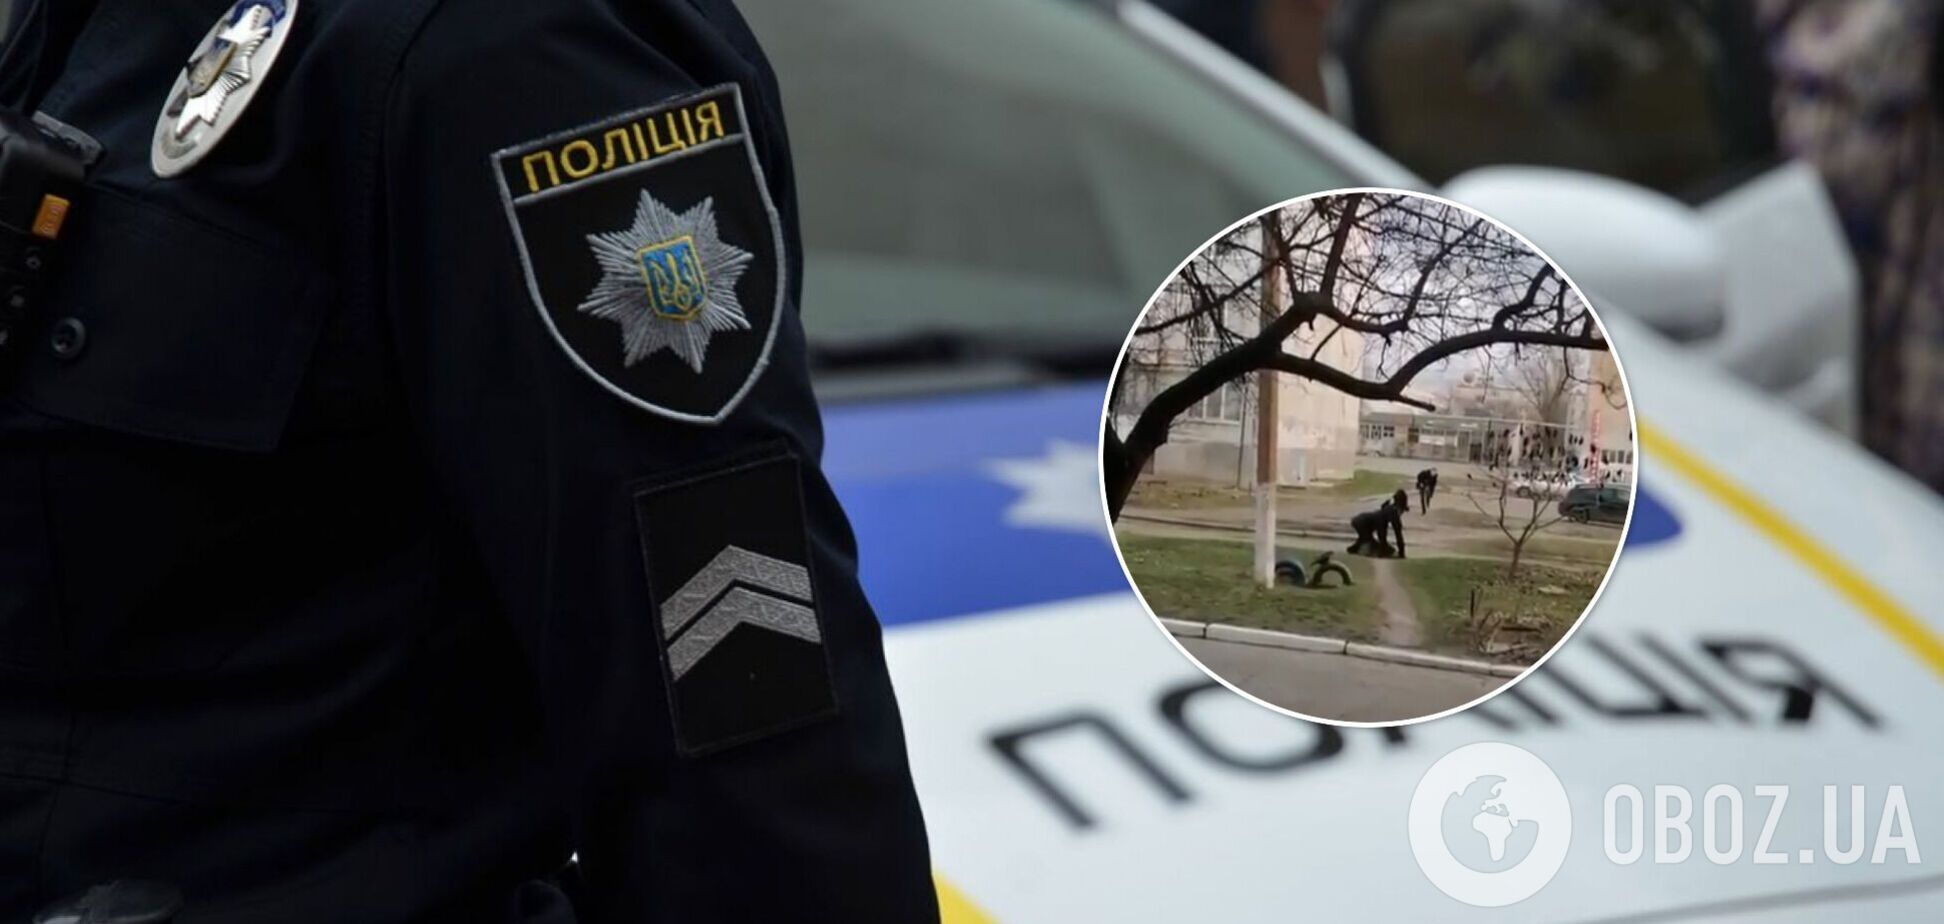 Под Днепром убили 16-летнего подростка: СМИ назвали причину конфликта. Видео